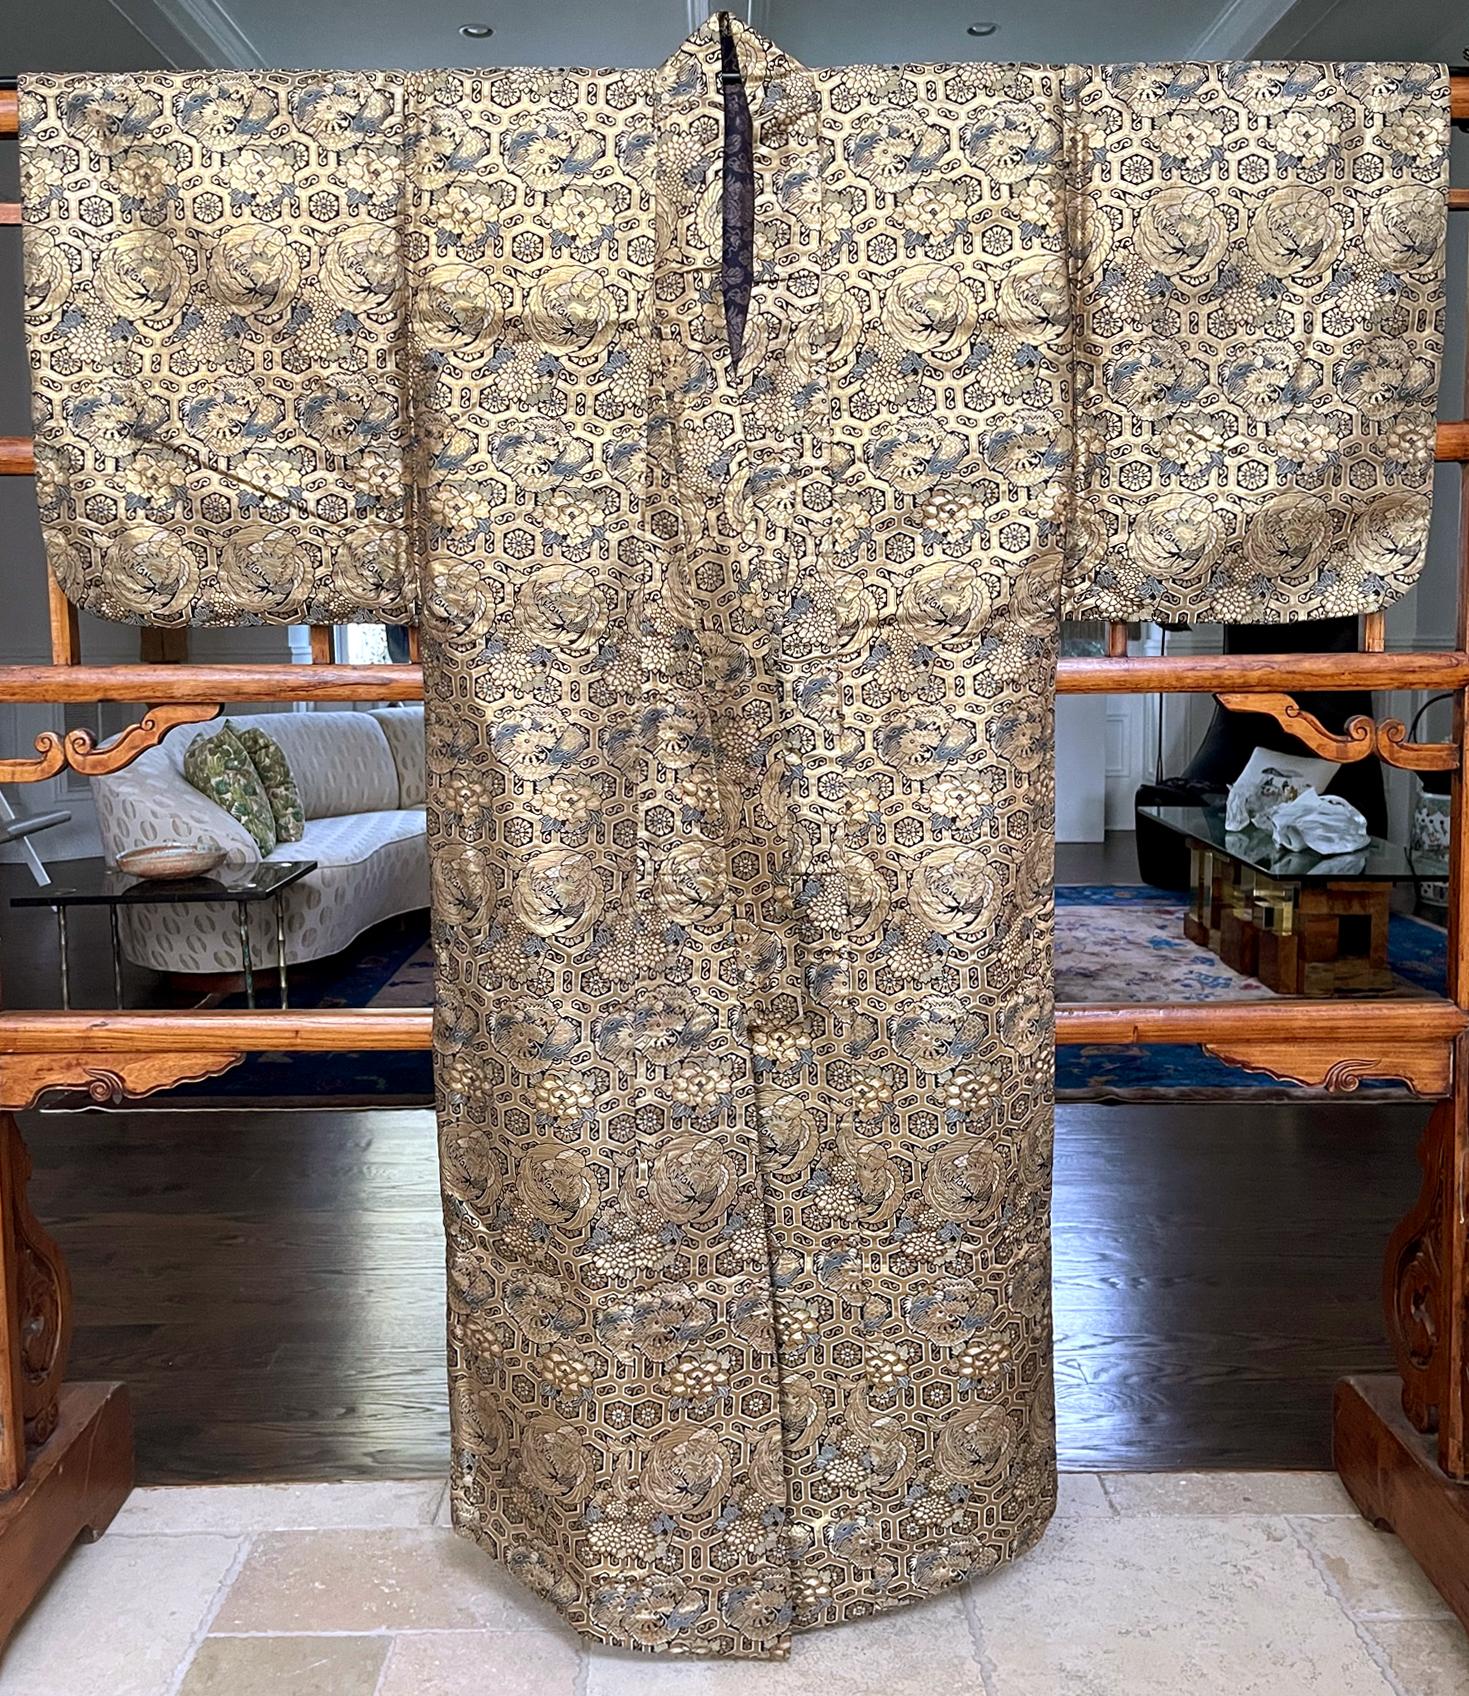 Costume de nô fabriqué à partir d'un magnifique brocart en sergé de soie tissé avec des fils d'or métalliques, vers le milieu et la fin du XIXe siècle de la période Meiji. La robe est identifiée comme 